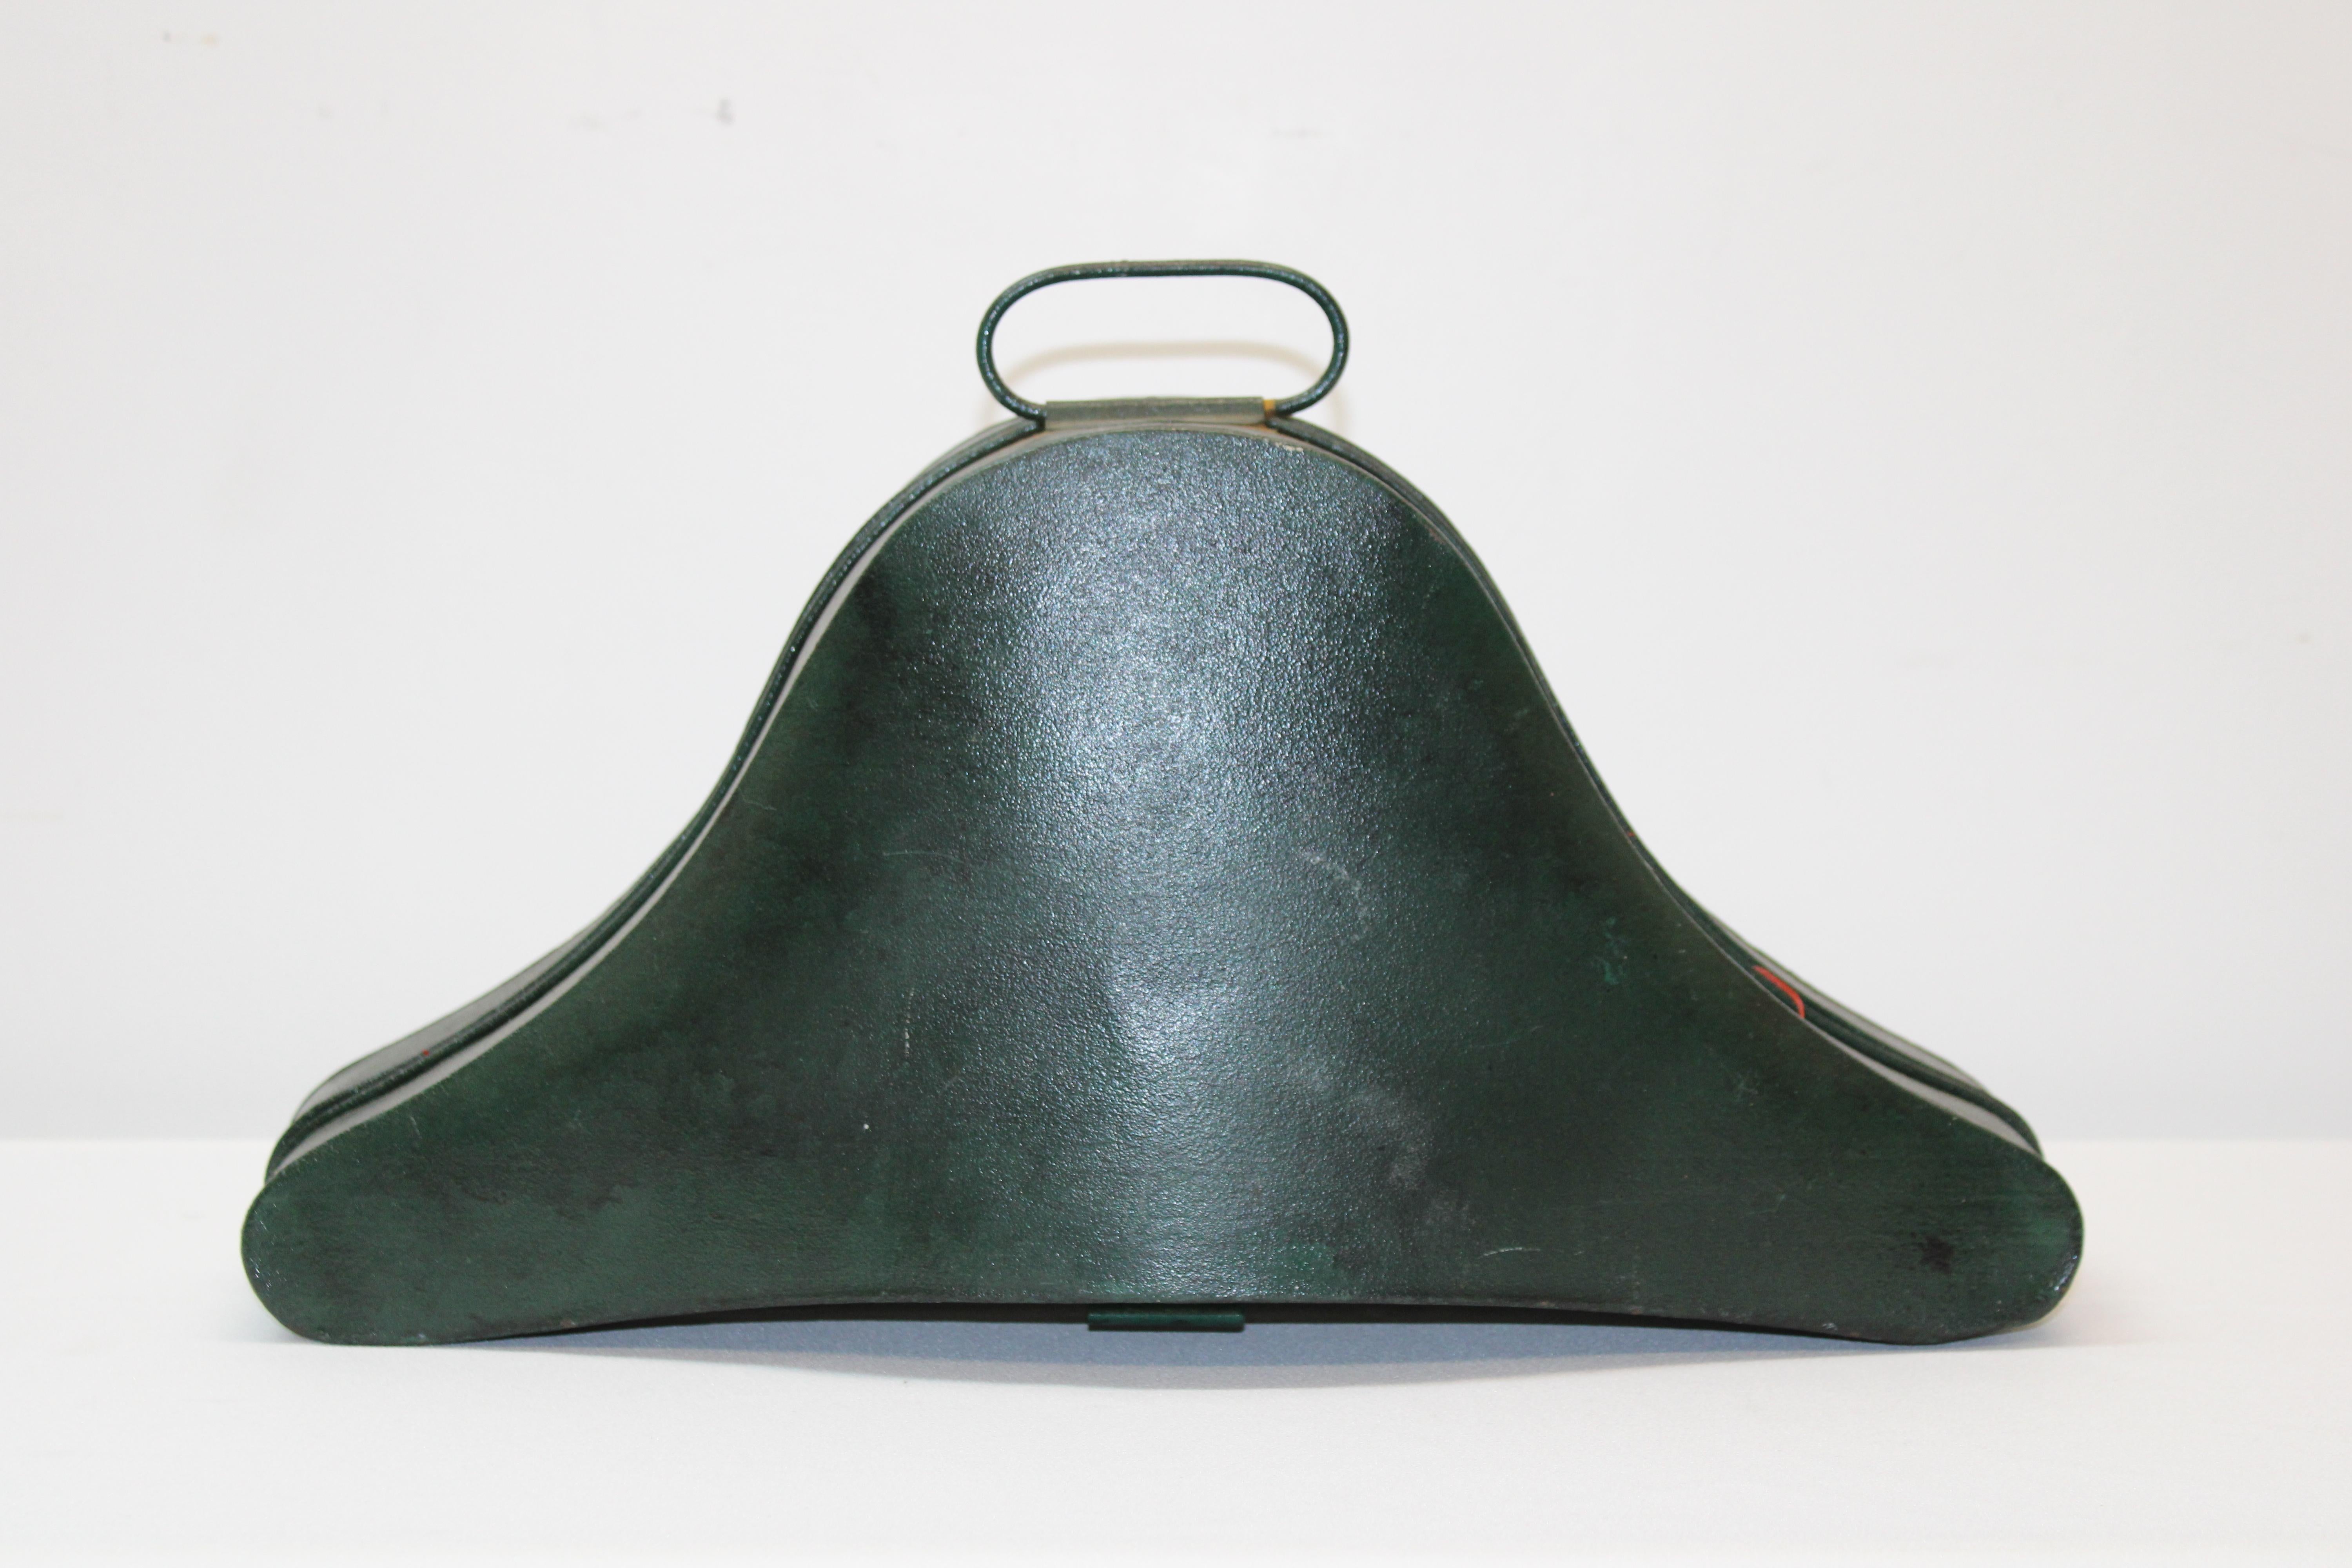 C. Fin du 19e siècle - début du 20e siècle

Chapeau militaire en soie avec boîte en métal originale par M.C Lilley CO.